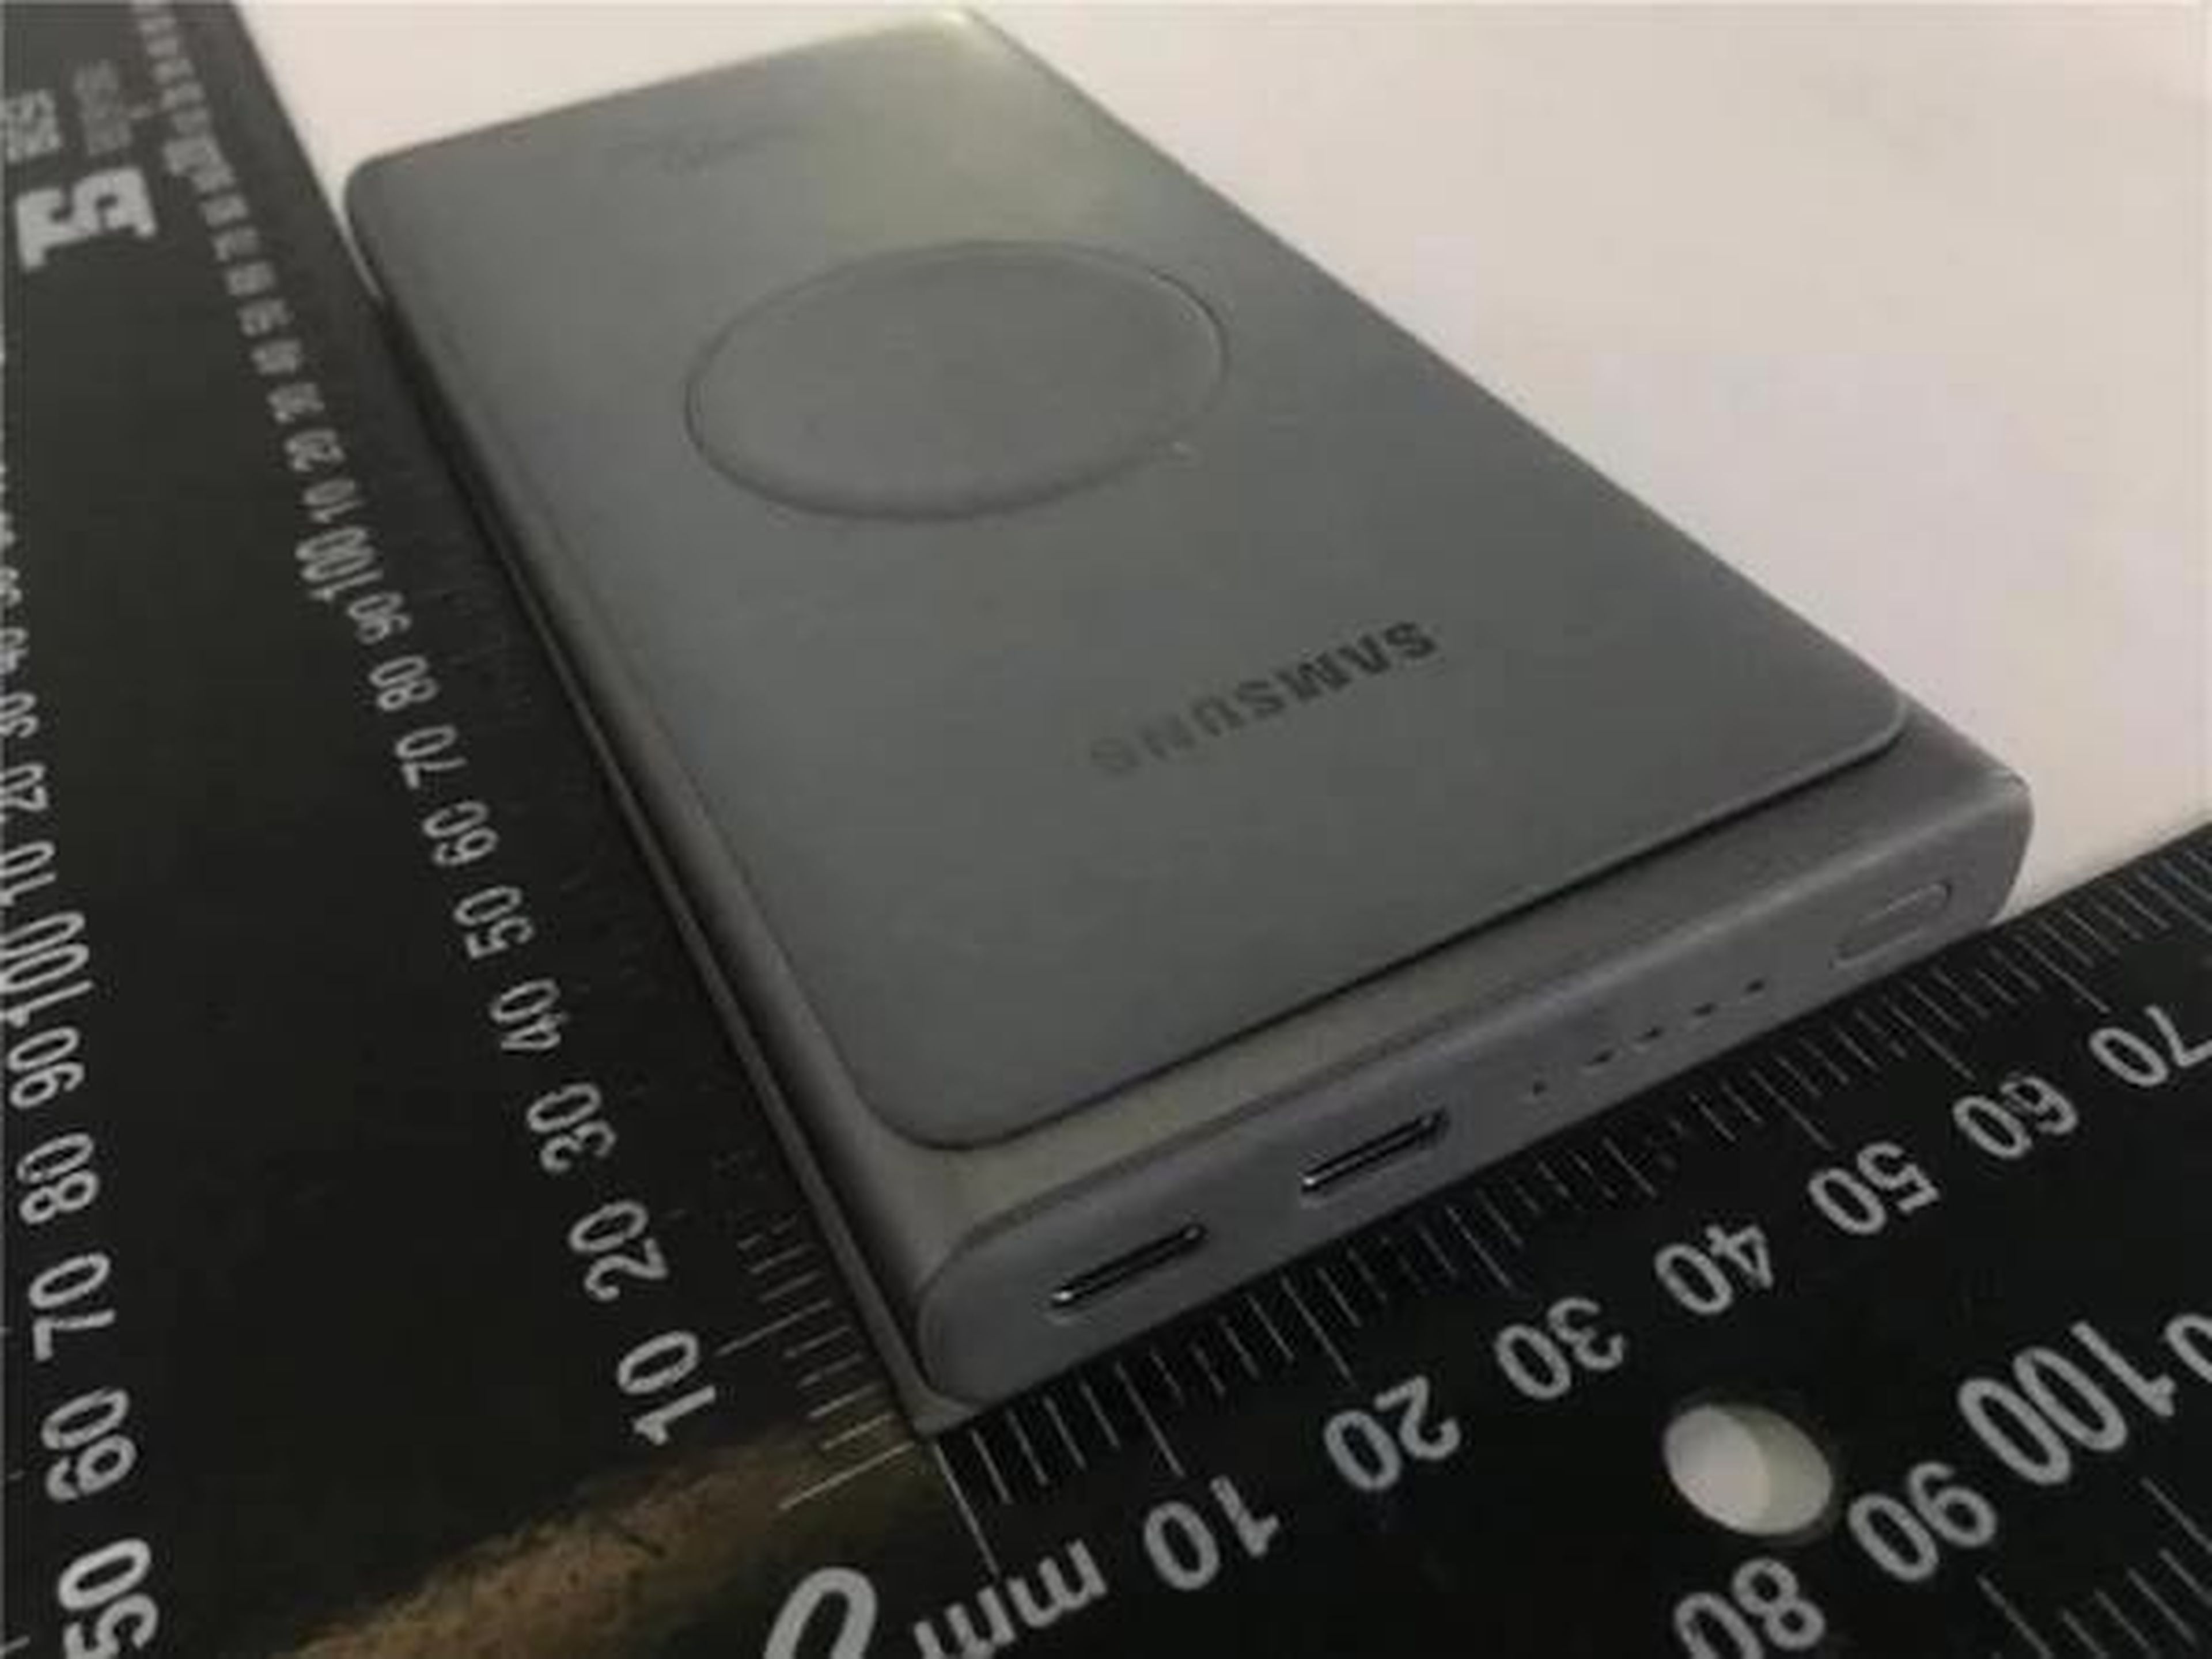 Samsung prepara una batería externa con soporte para carga rápida de 25 W